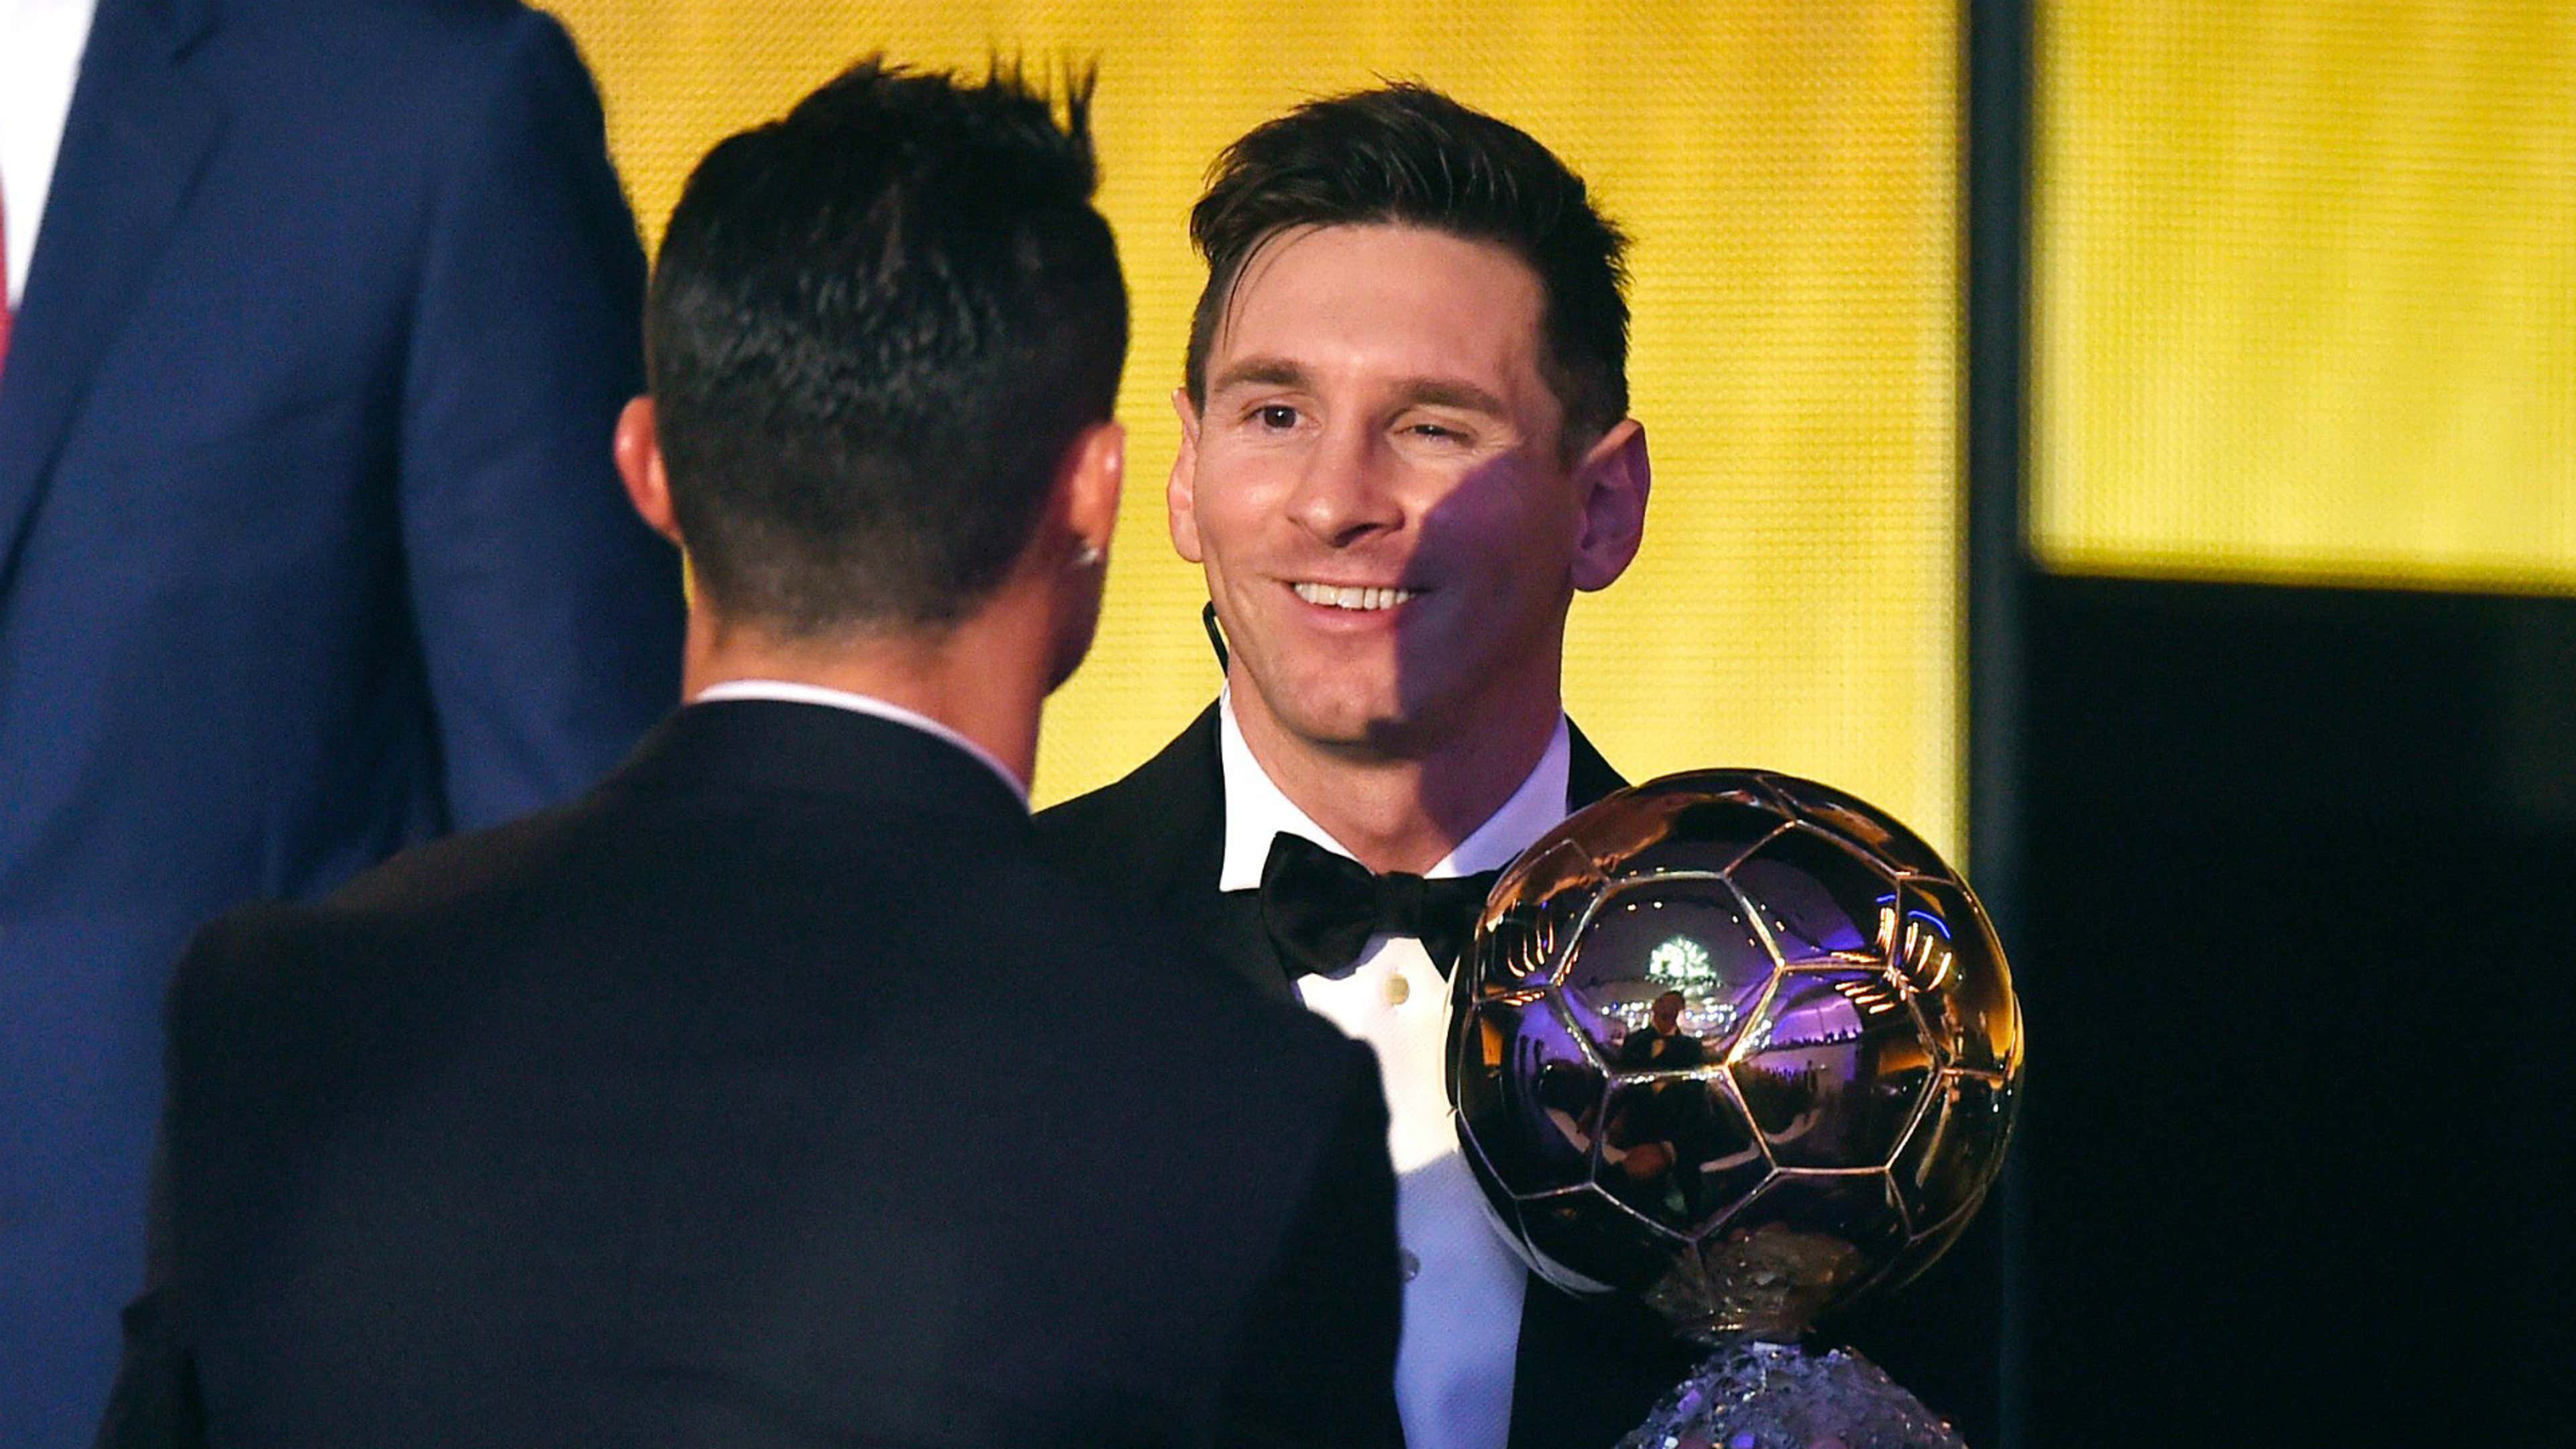 Lionel Messi vs Cristiano Ronaldo: Does the Ballon d'Or settle the